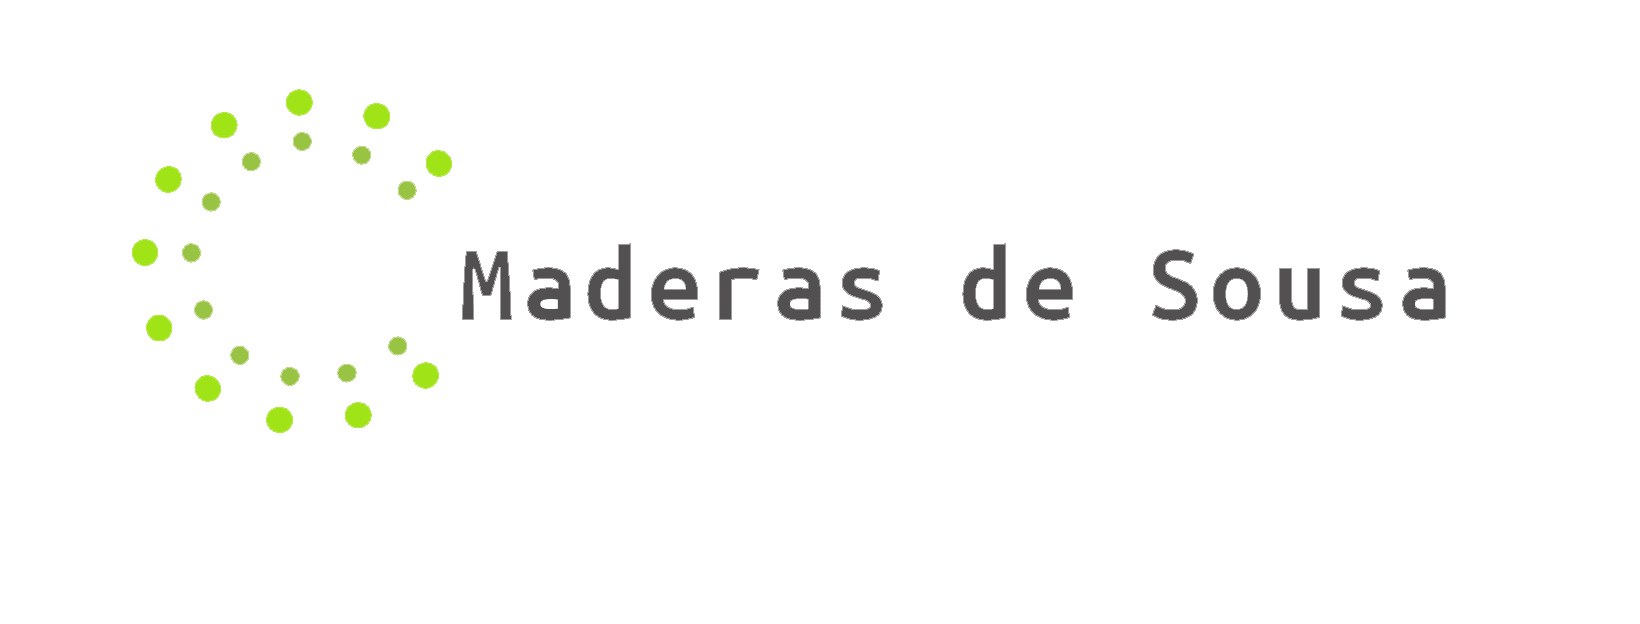 Maderas de Sousa